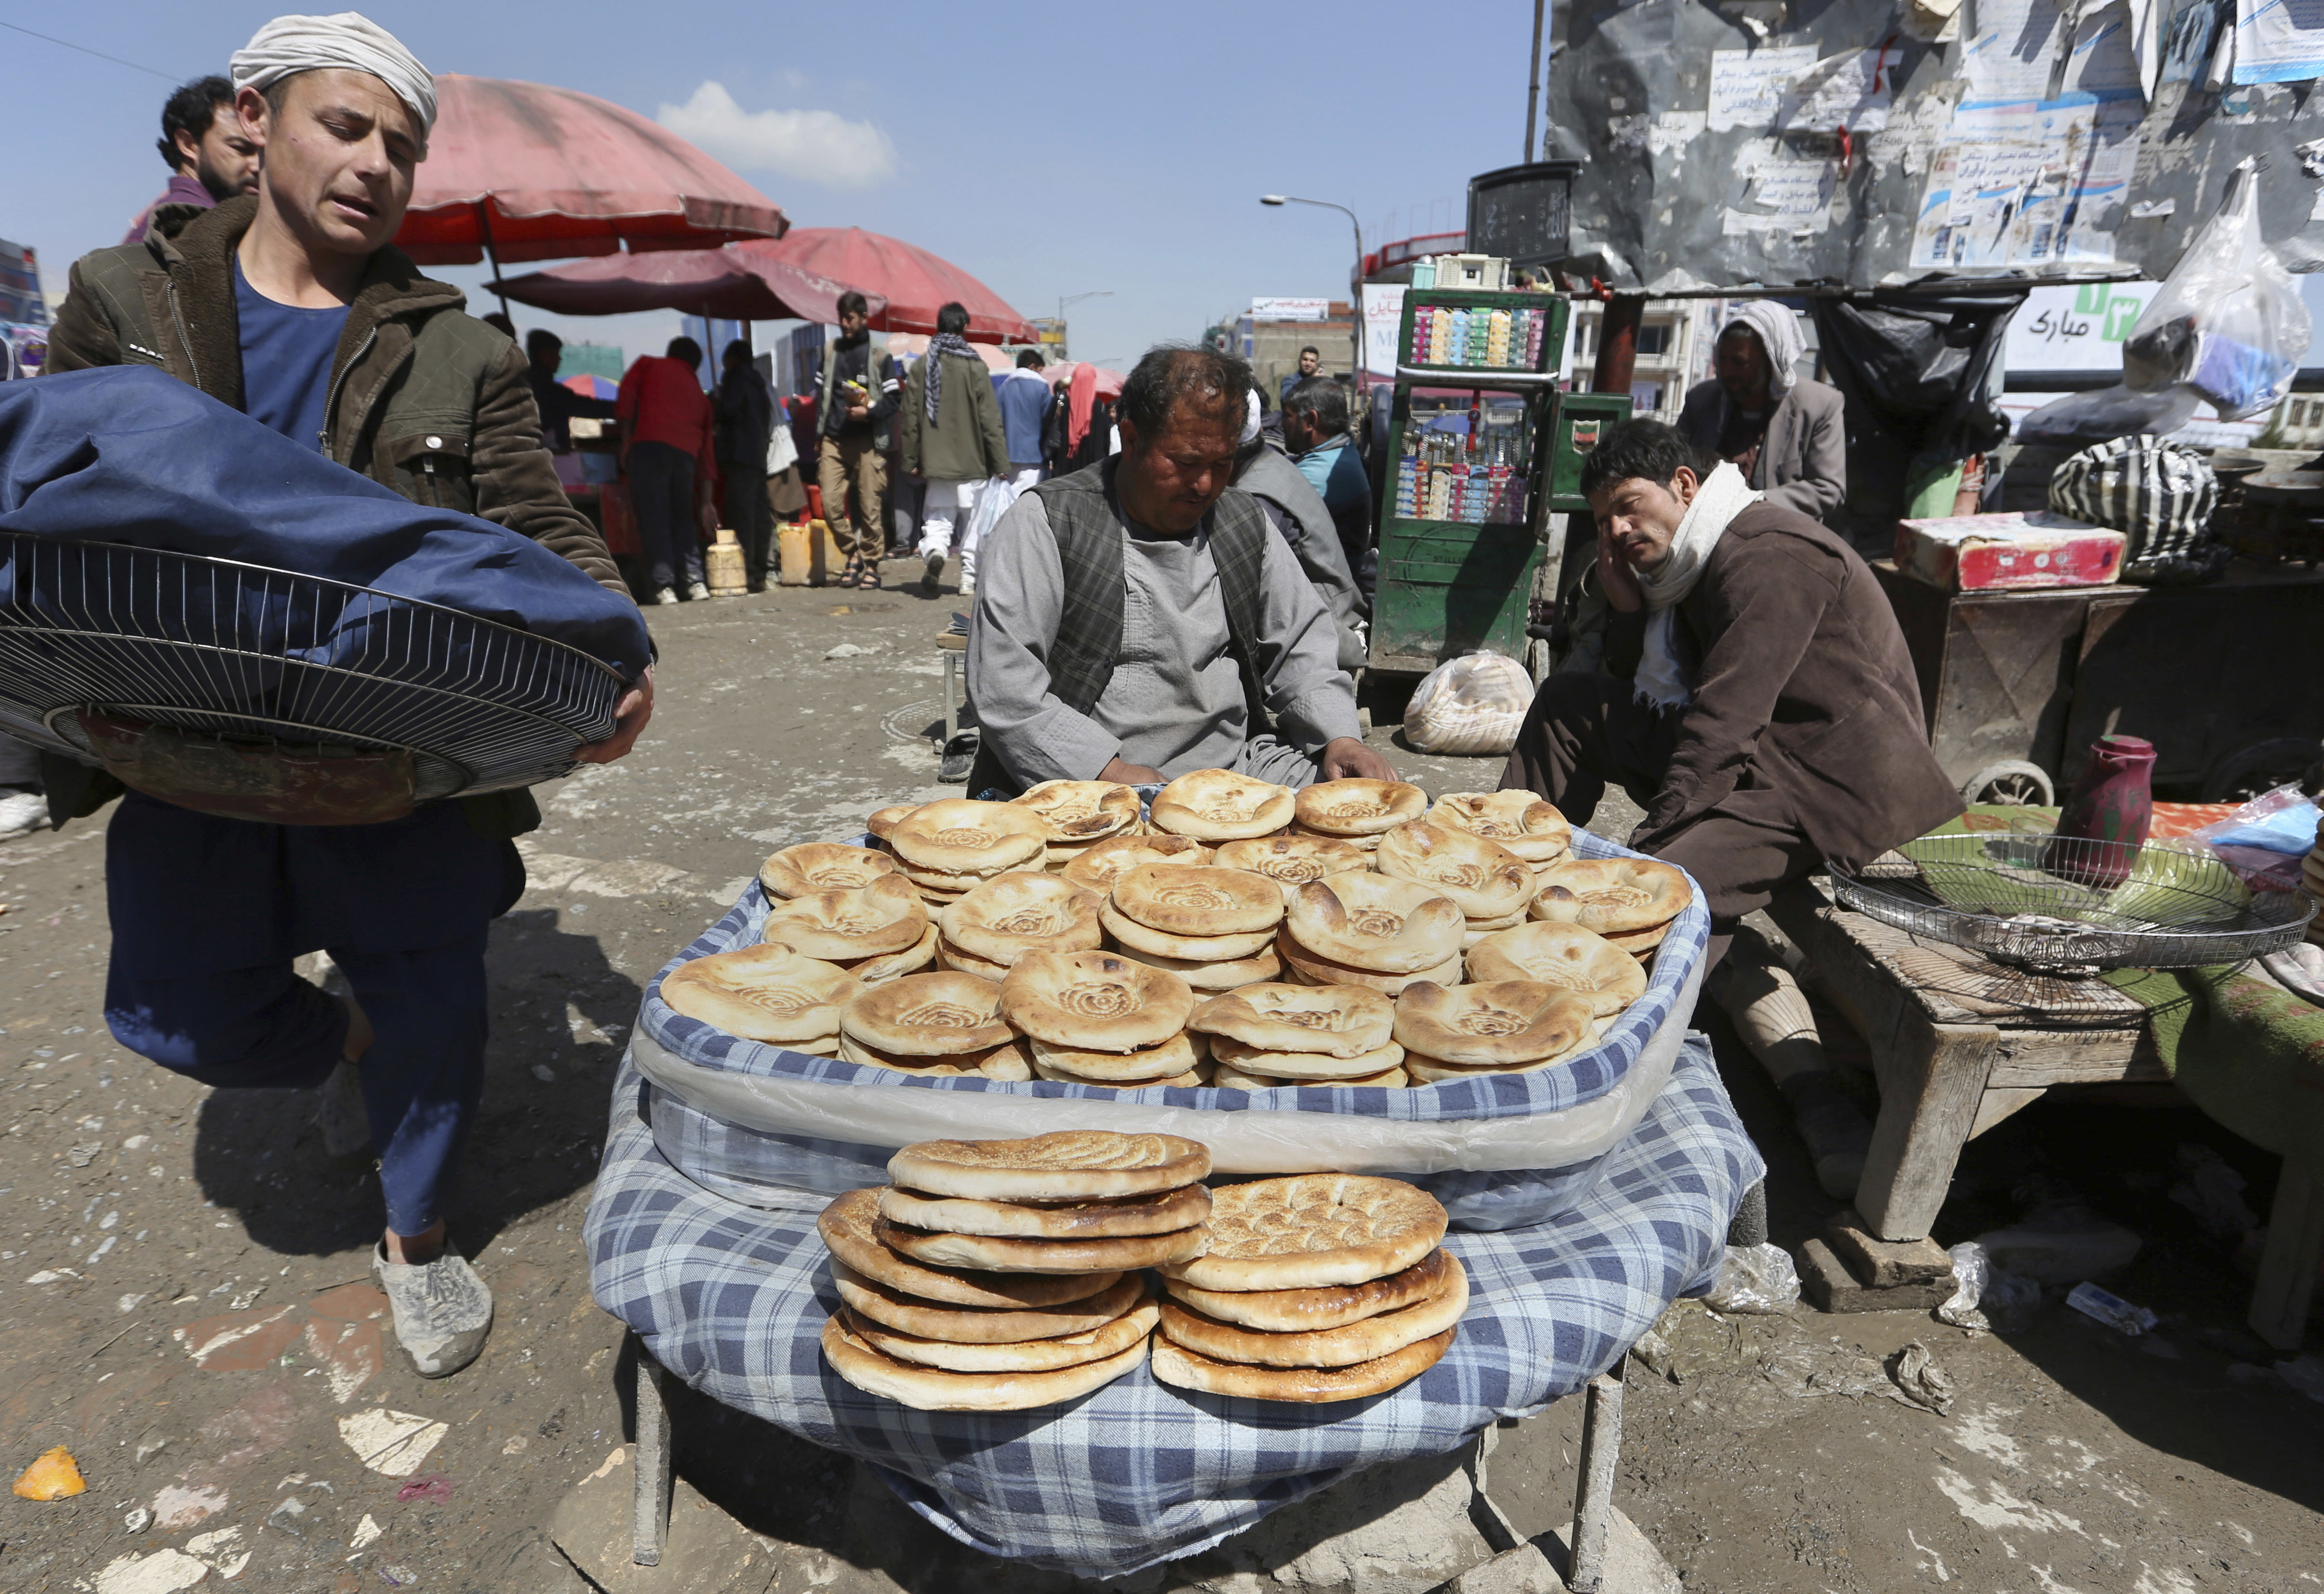 An Afghan street vendor, center, sells bread in Kabul, Afghanistan, Thursday, April 6, 2017. (AP Photo/Rahmat Gul)